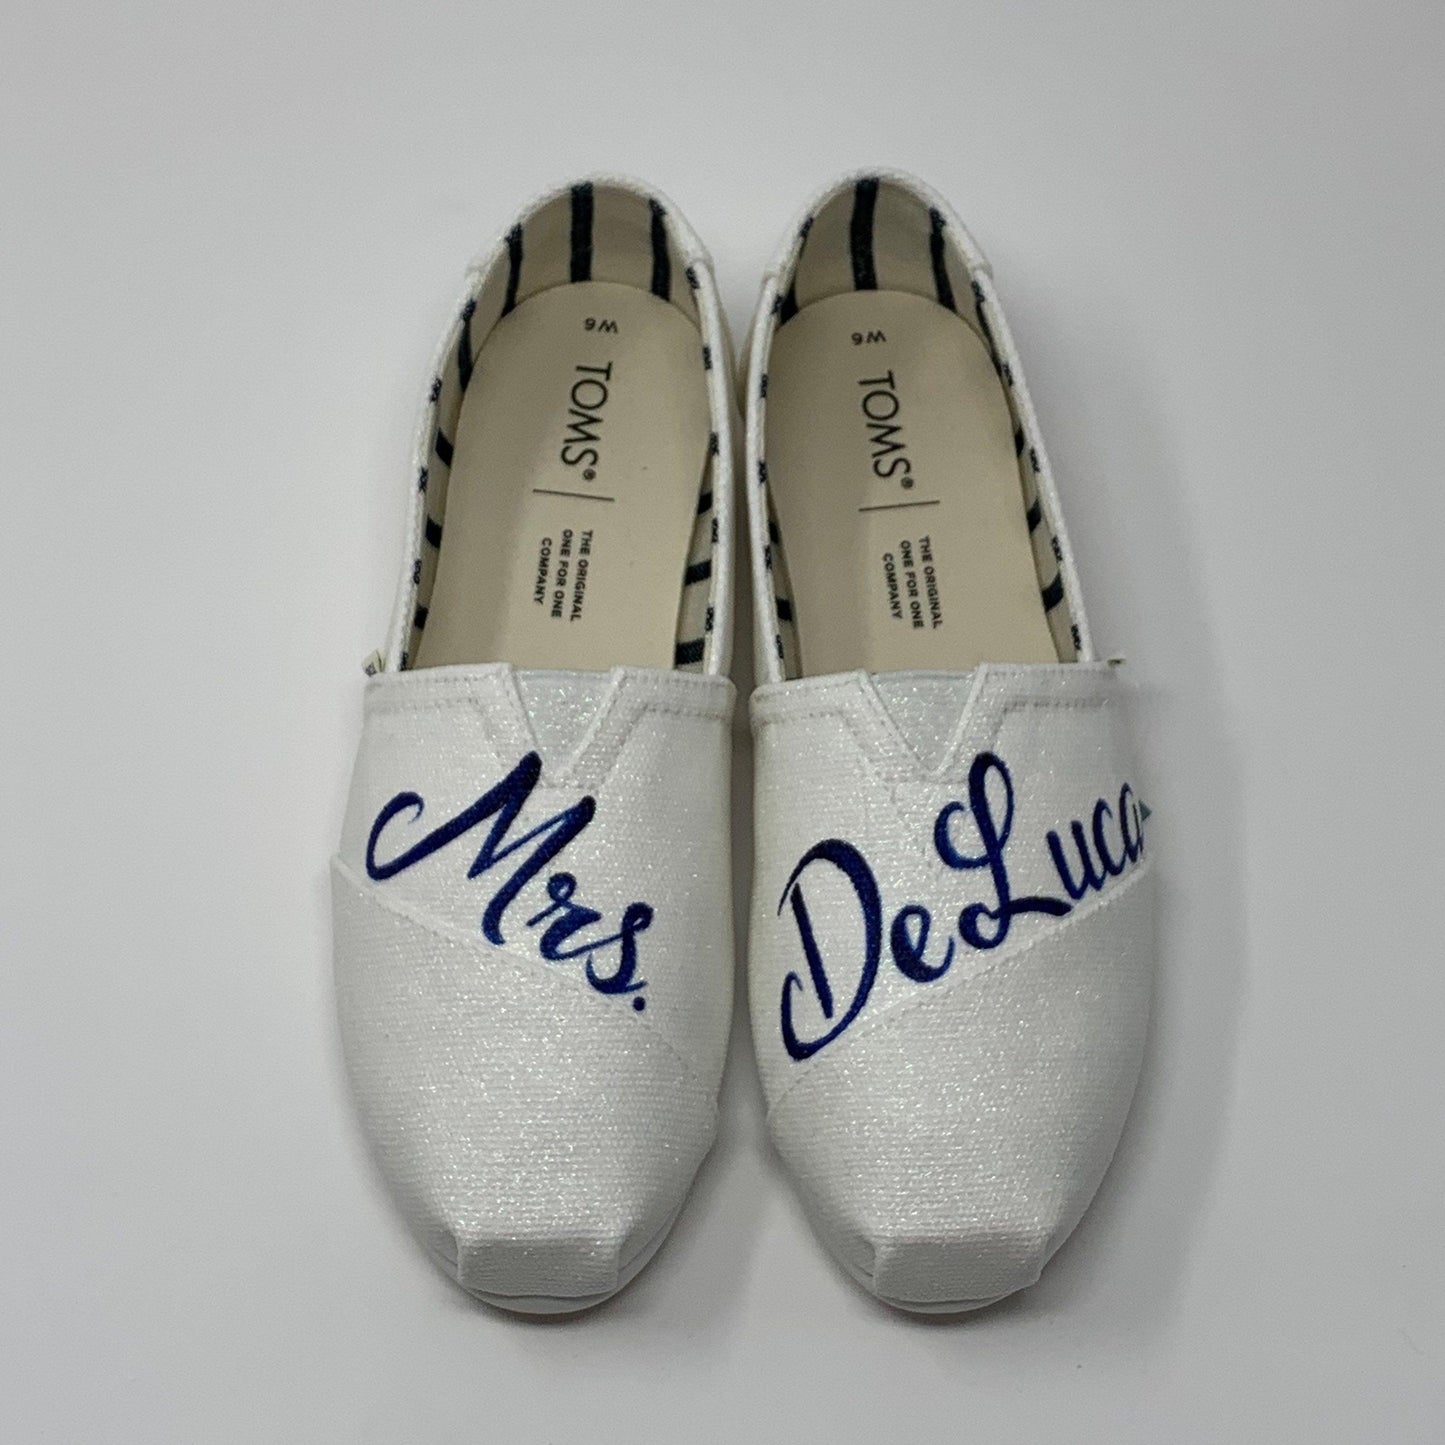 Mrs. White Wedding Shoes